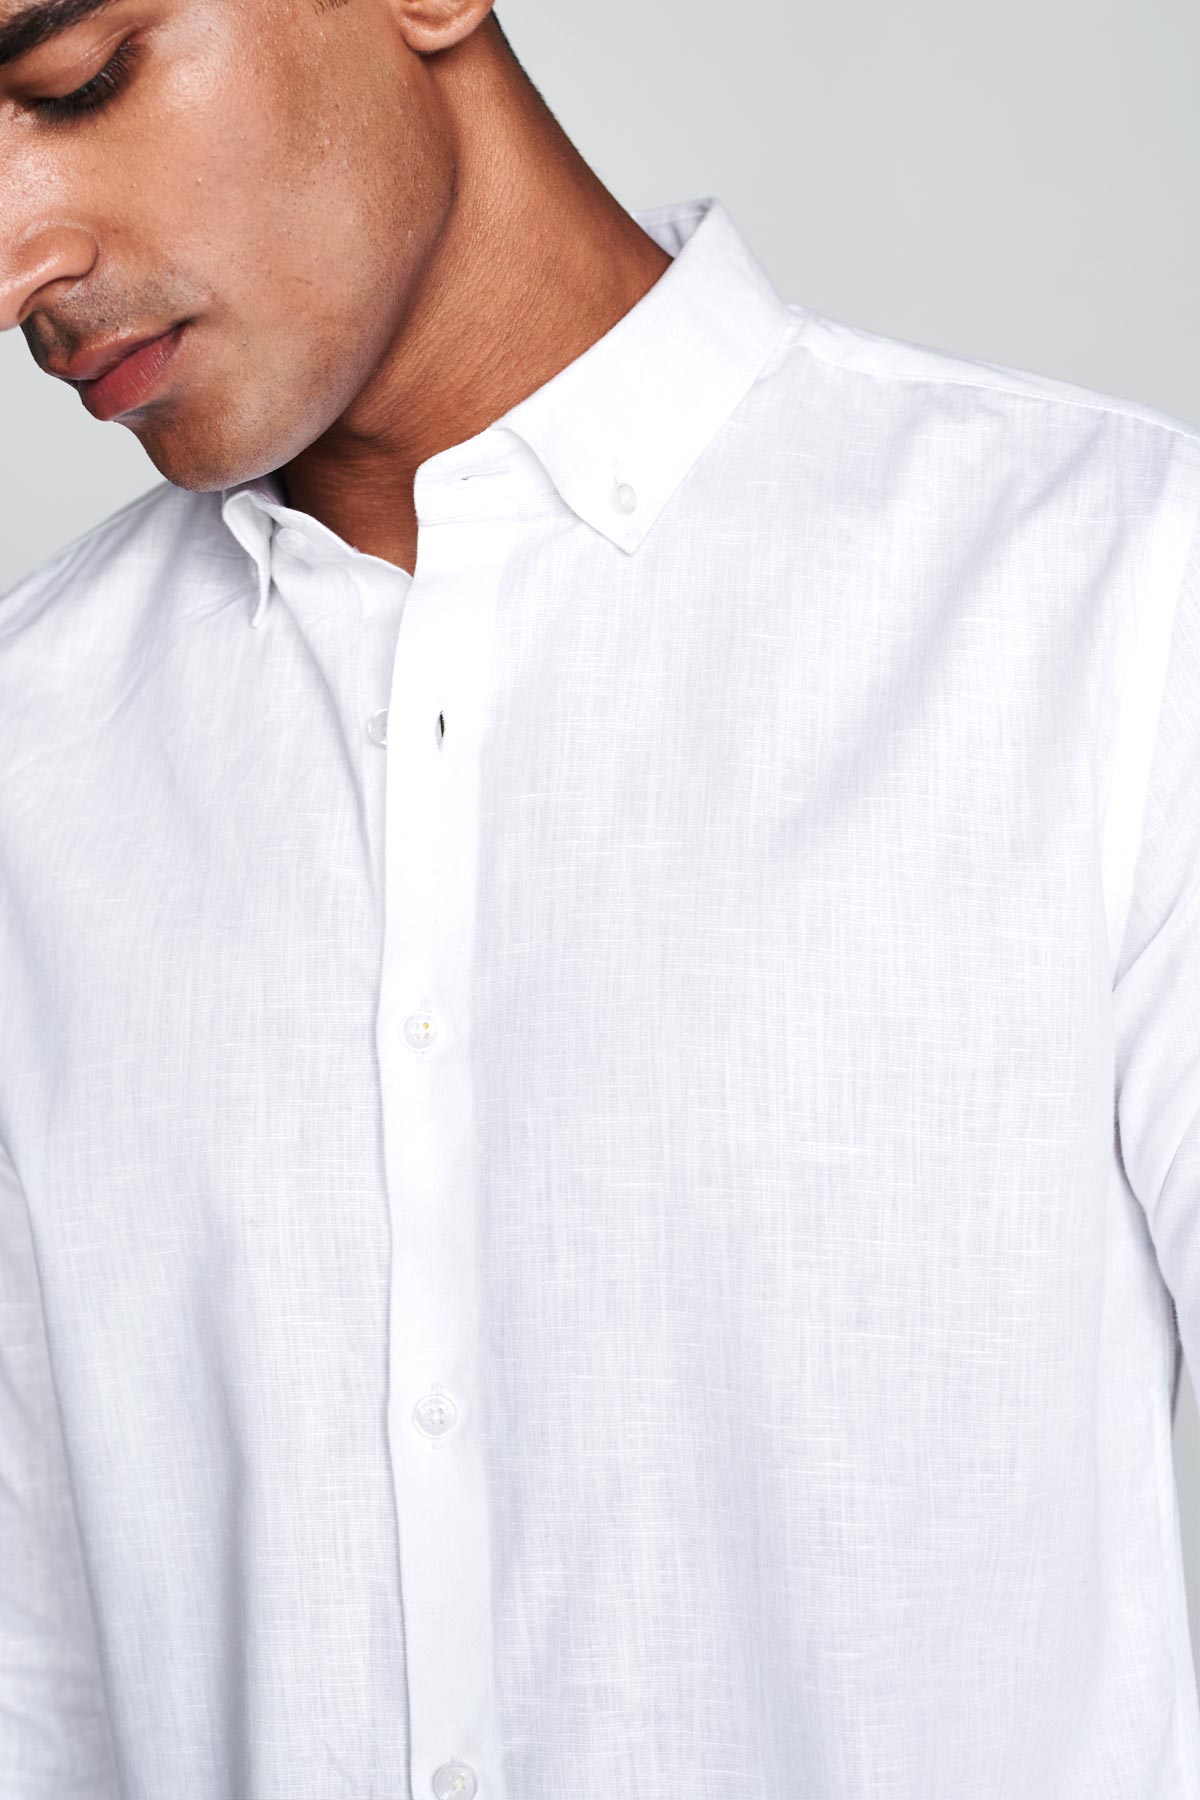 Buy White Full Sleeves Cotton Linen Shirt For Men's | Beyours